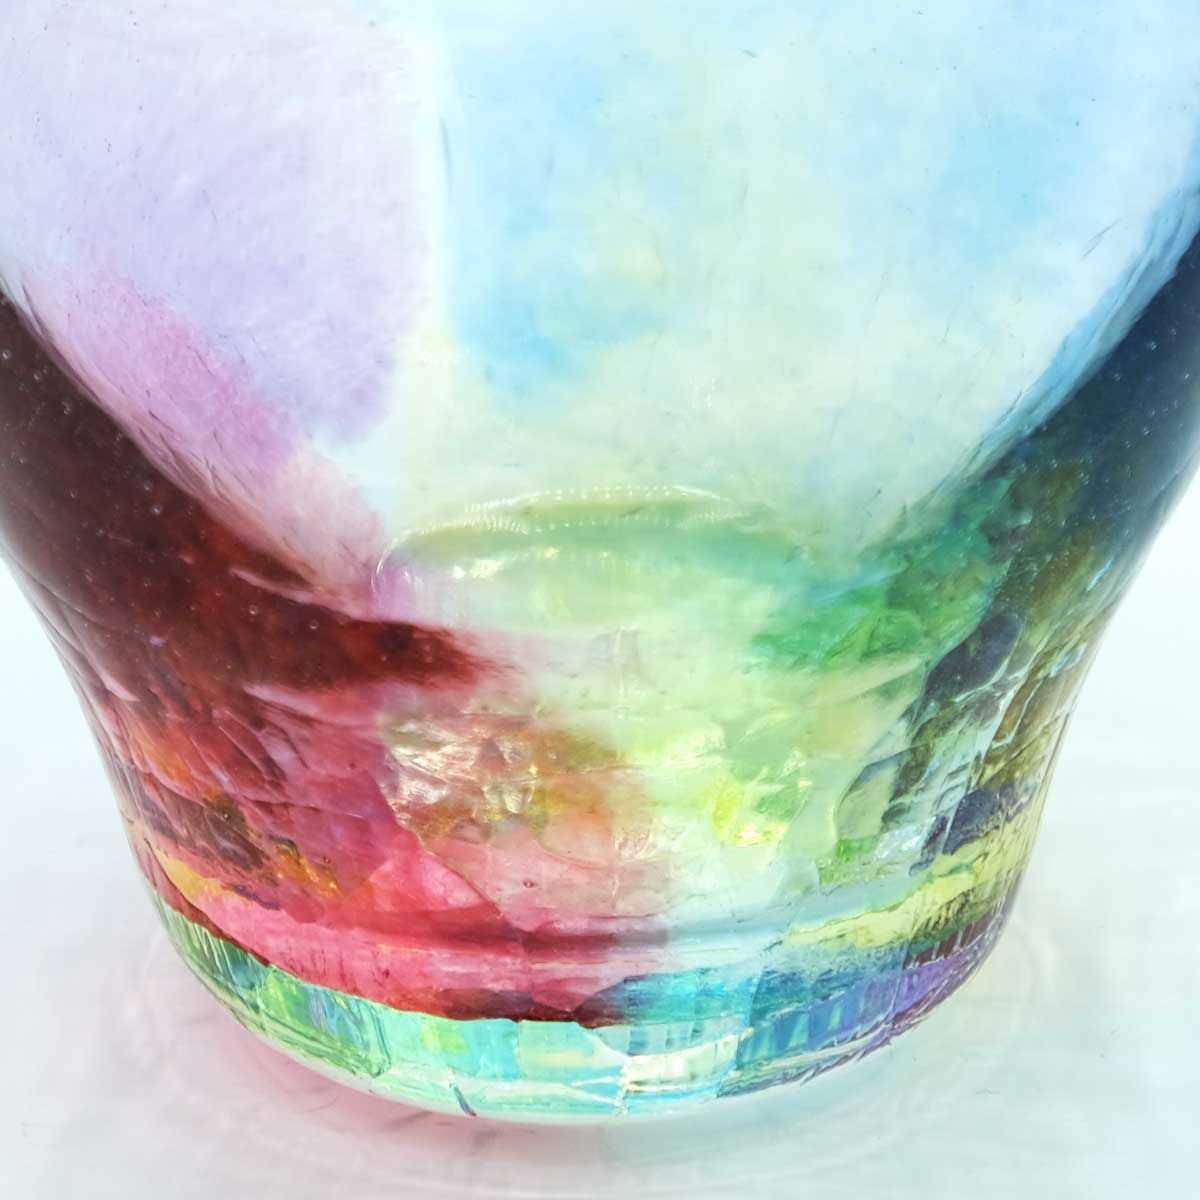 SAIZOU GLASS LABO サイゾウグラスラボ ハンドメイド ガラス酒器 虹の